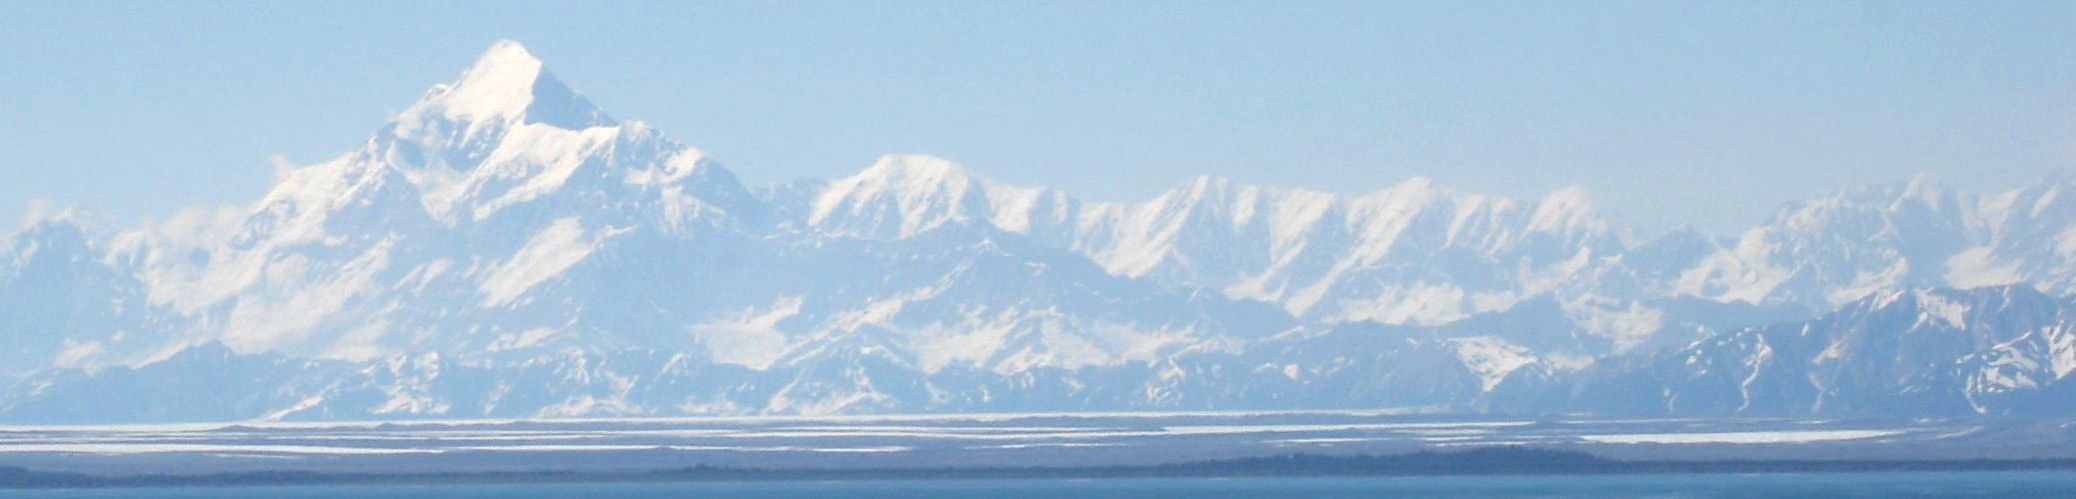 Mt. Saint Elias, Alaska